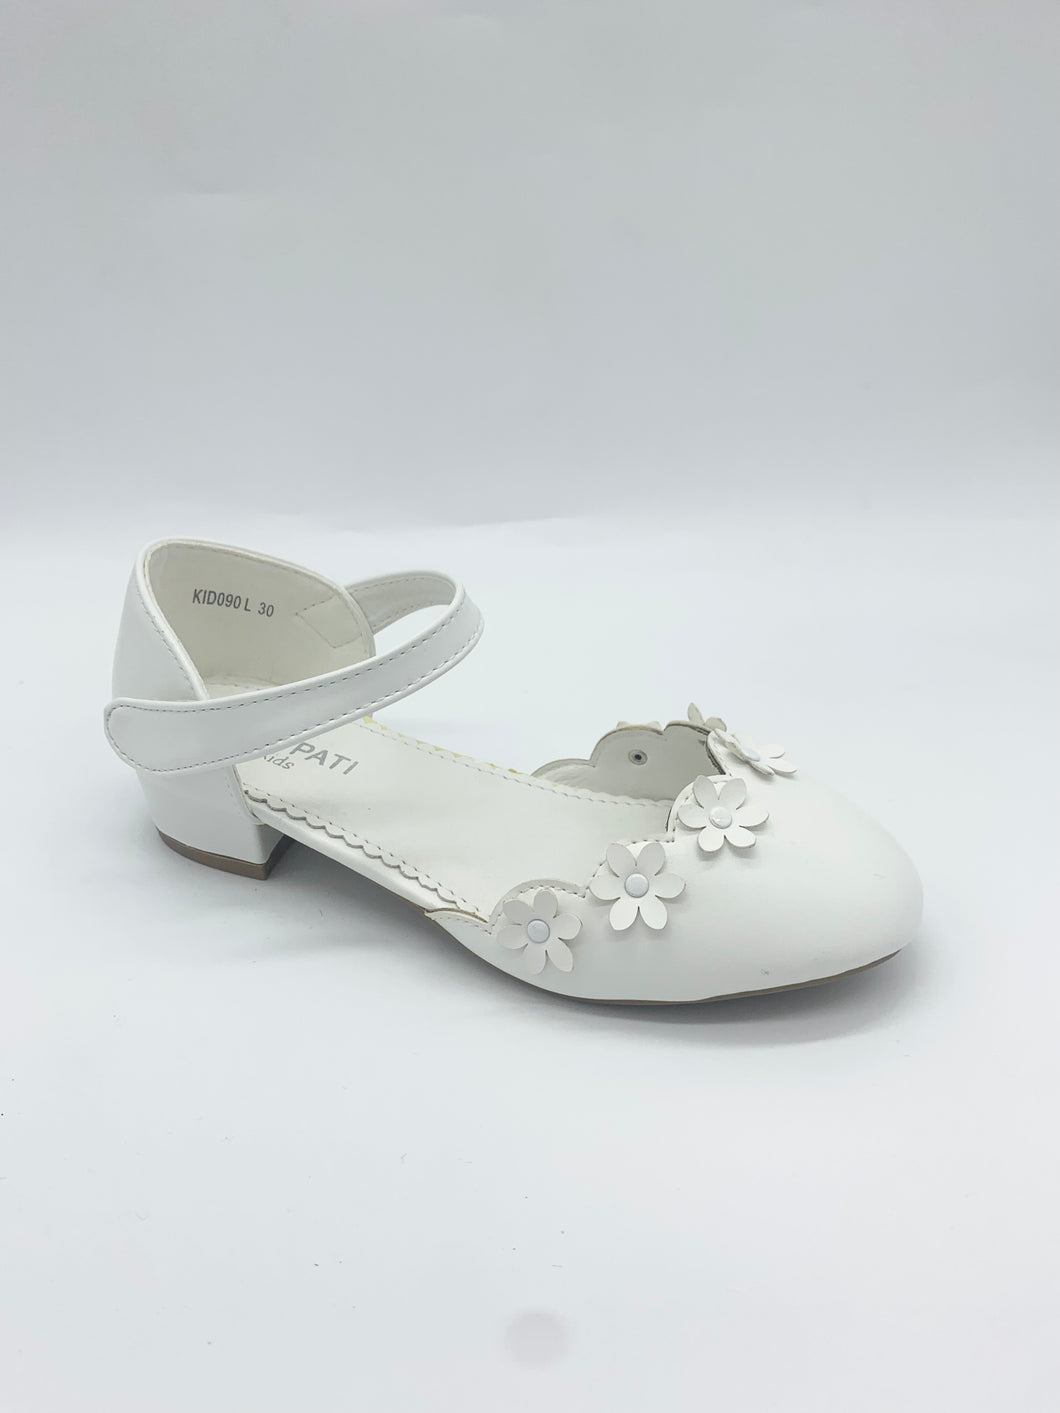 White Sandal Heel